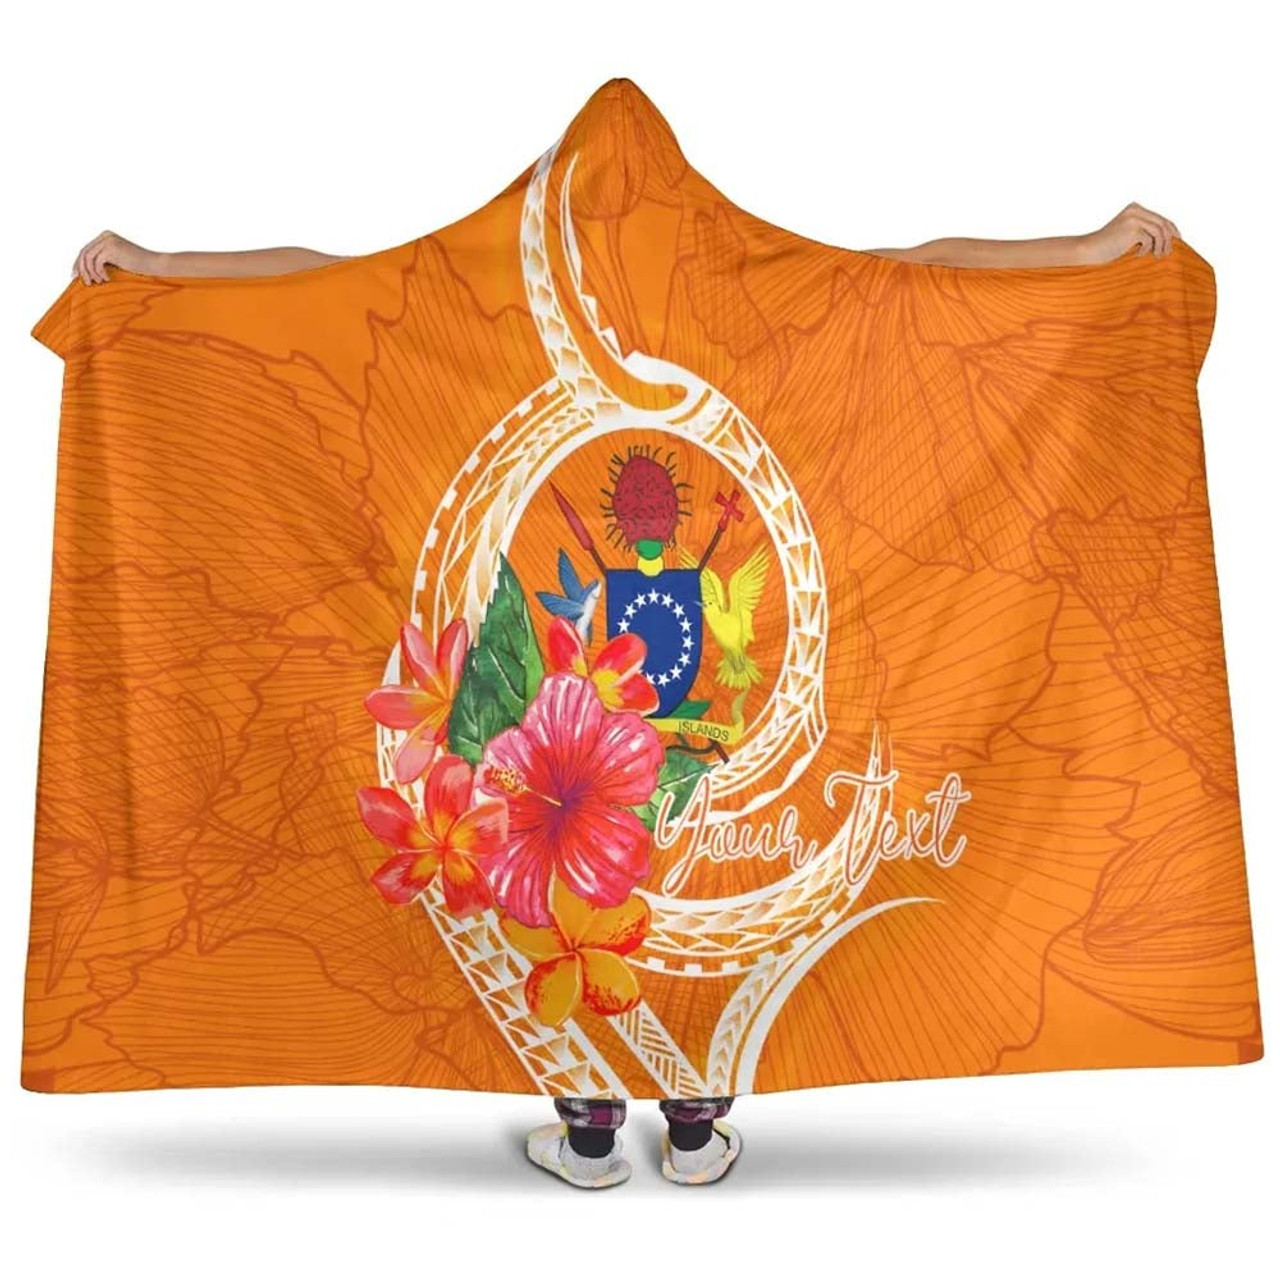 Cook Islands Polynesian Custom Personalised Hooded Blanket - Orange Floral With Seal 1